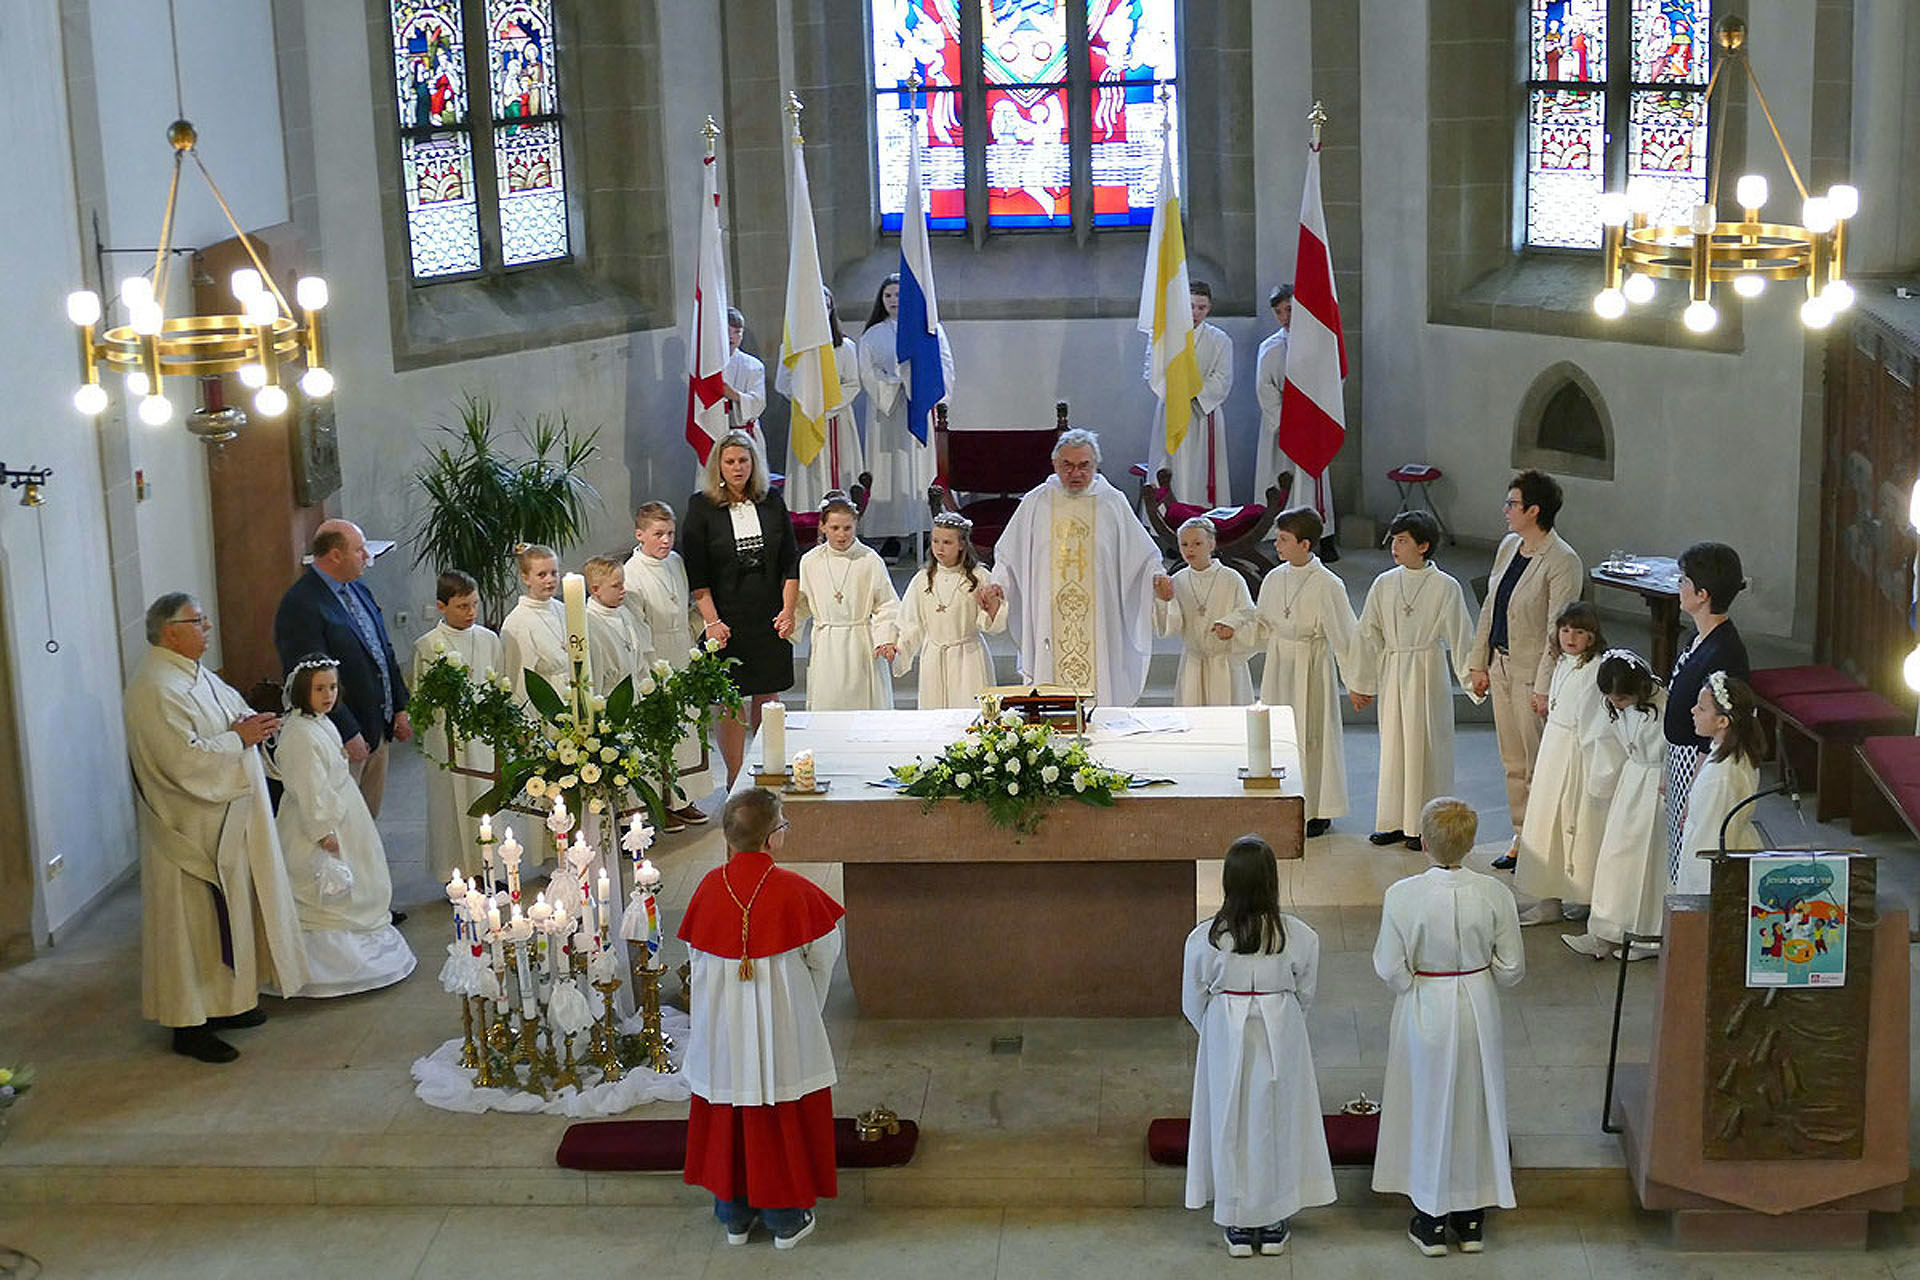 1. Heilige Kommunion in St. Crescentius